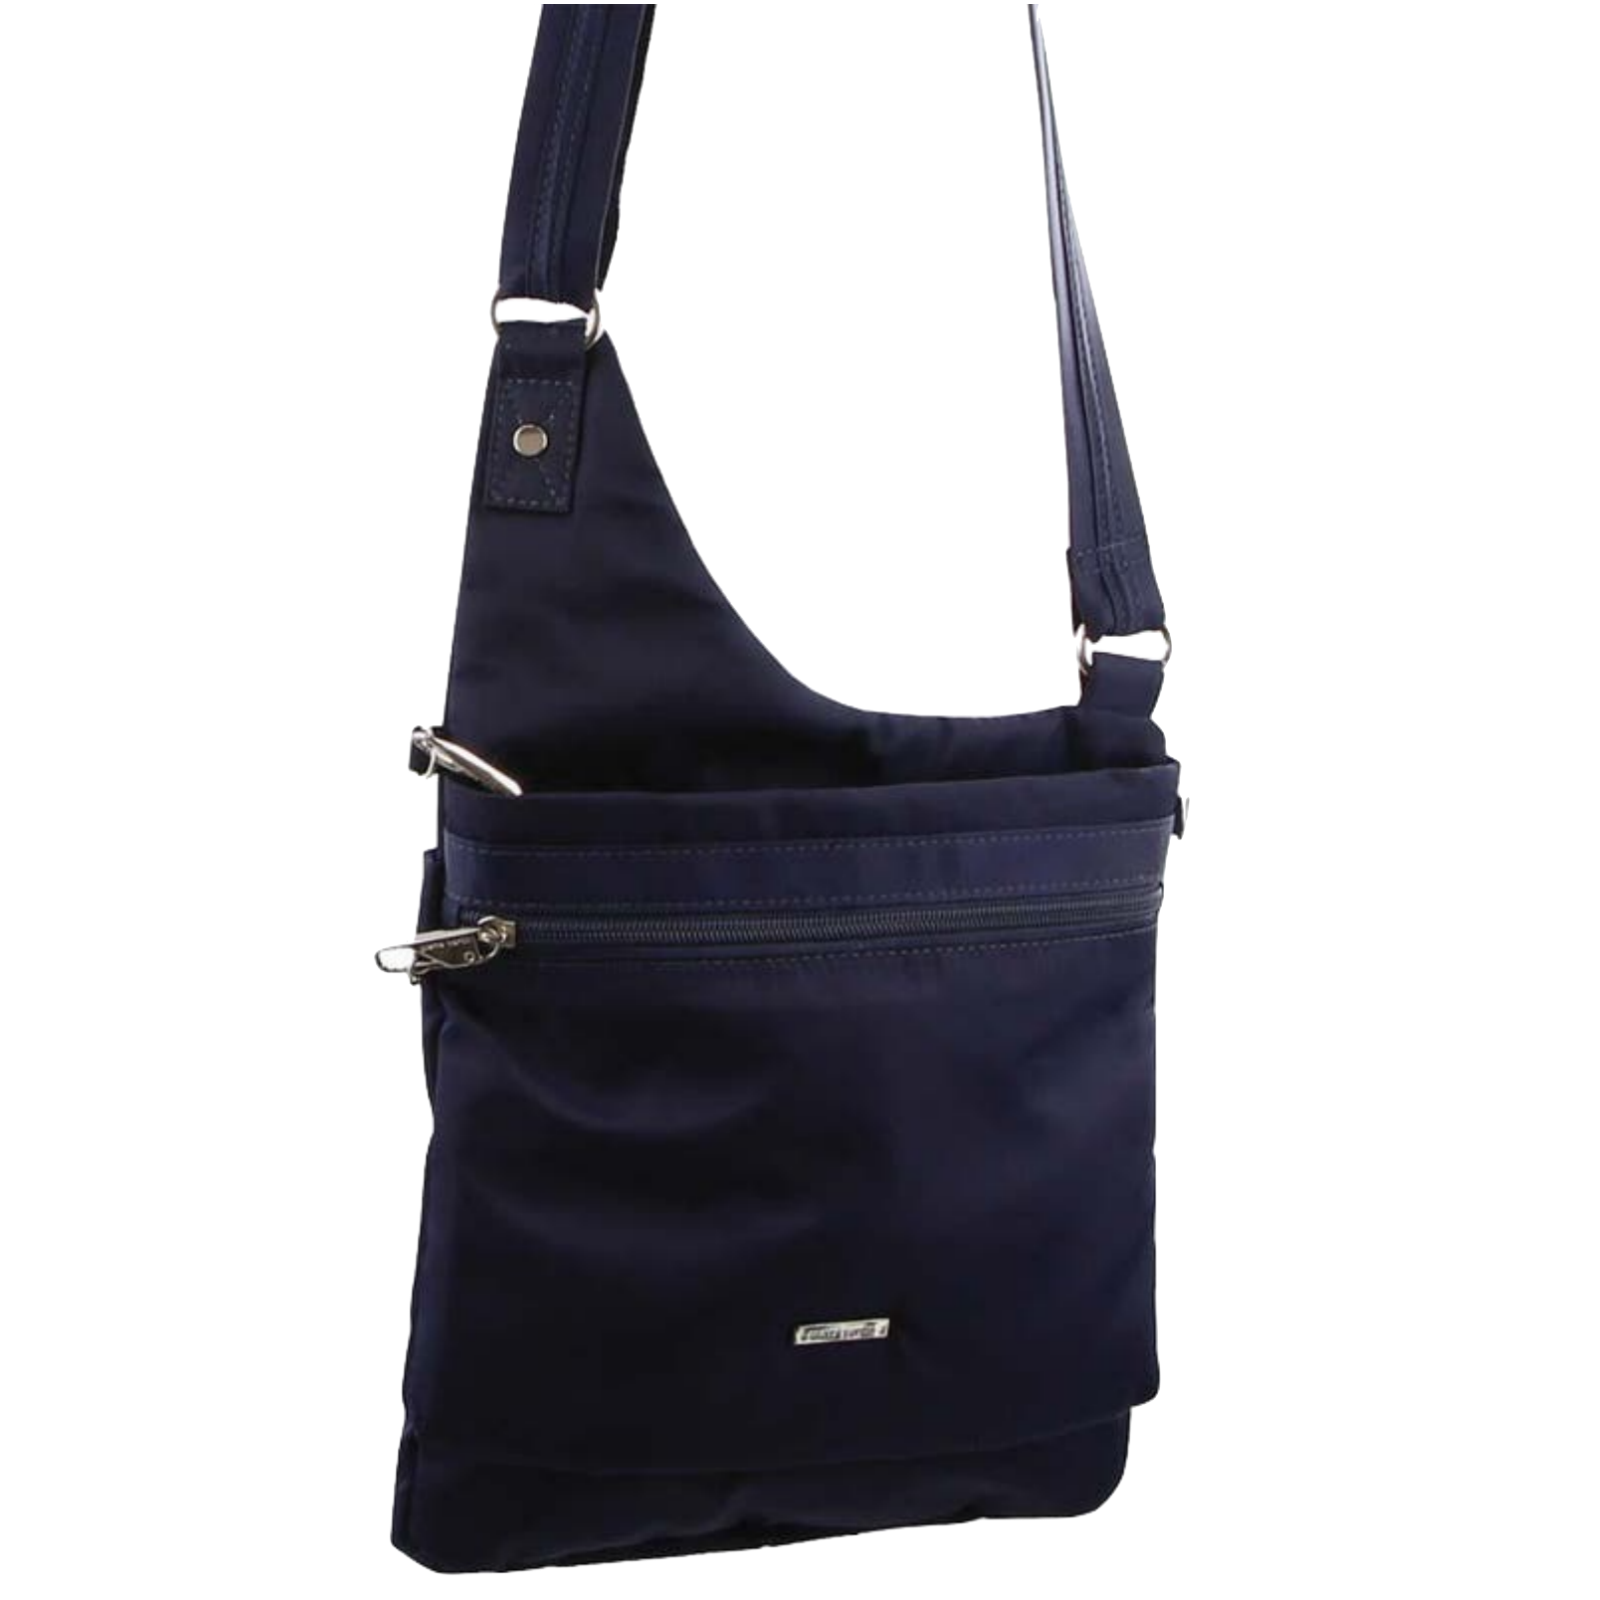 AntiTheft Sack 3L - Packable Portable Travel Bag